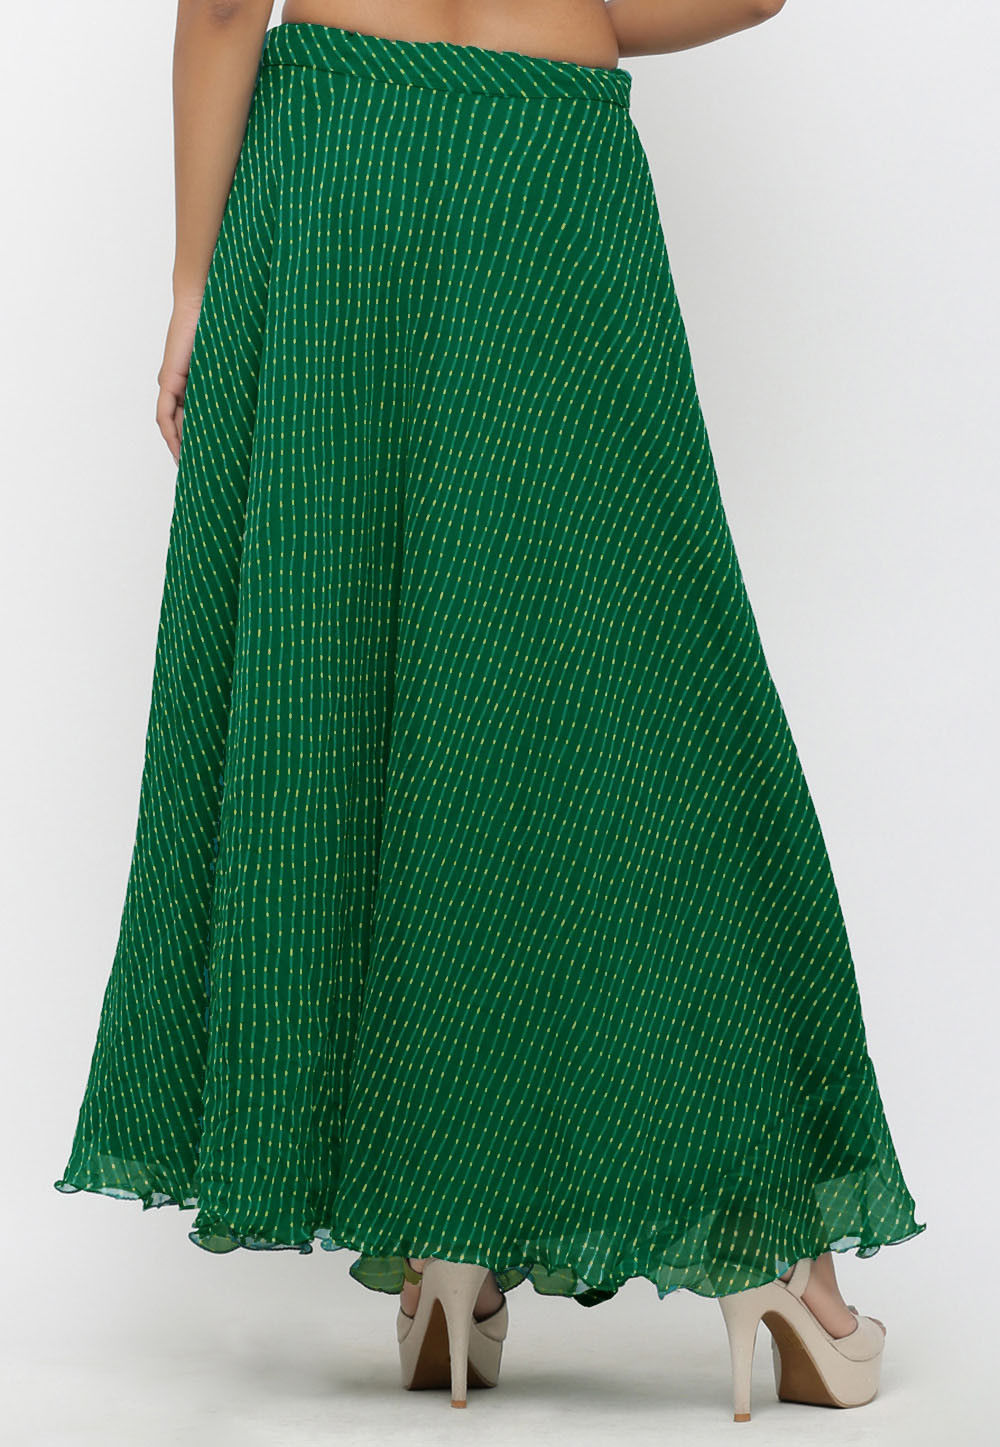 Leheriya Georgette Long Skirt in Teal Green : BNJ644